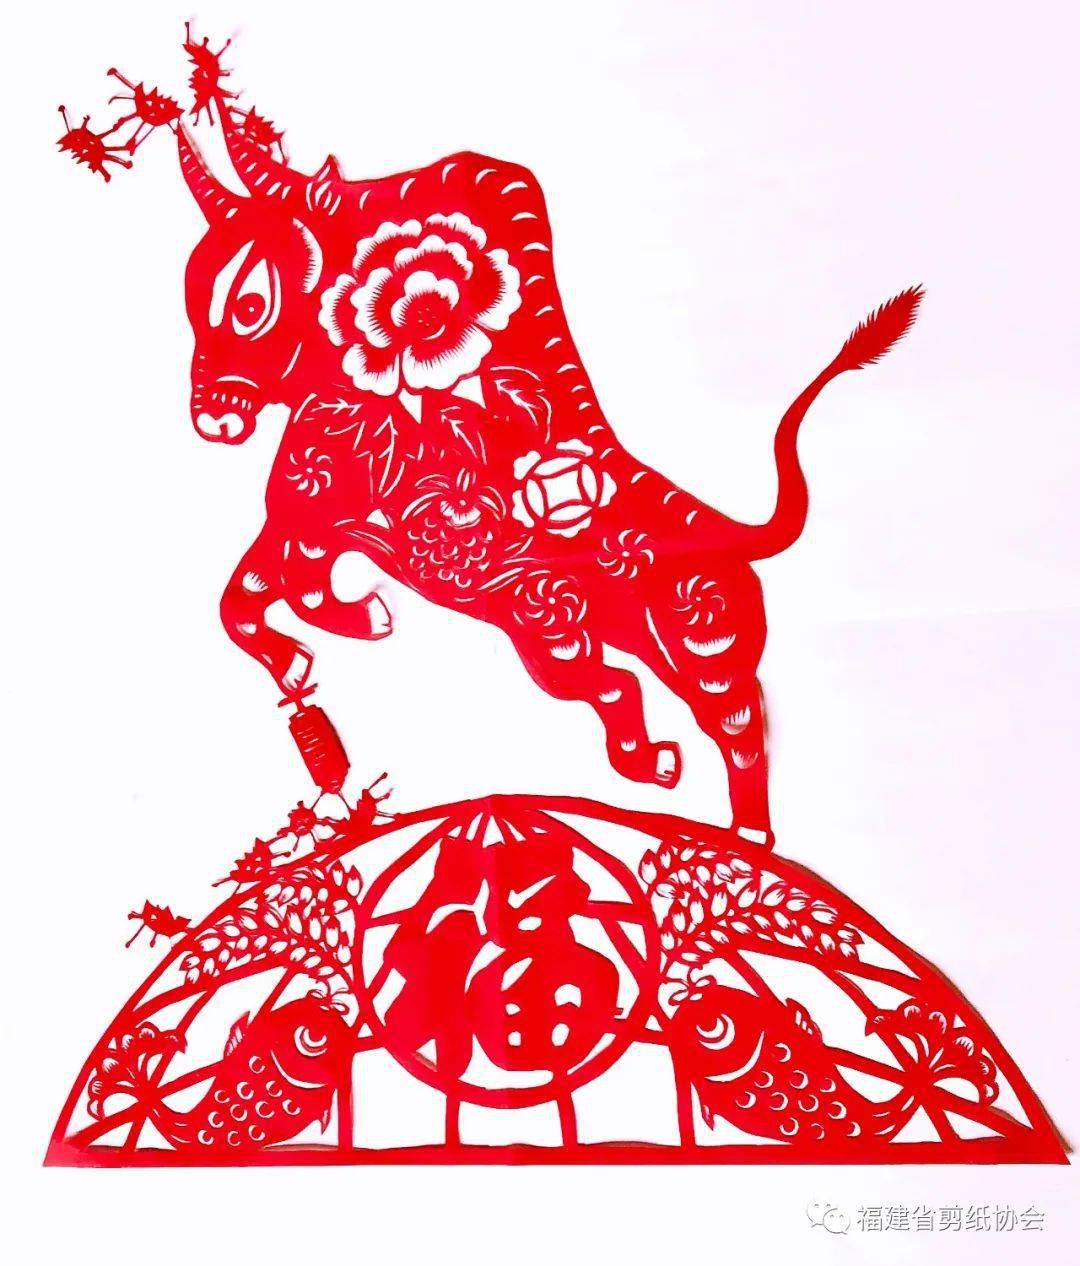 "金牛迎春"——福建民间剪纸艺术作品展将于2月8日在福建省海峡民间